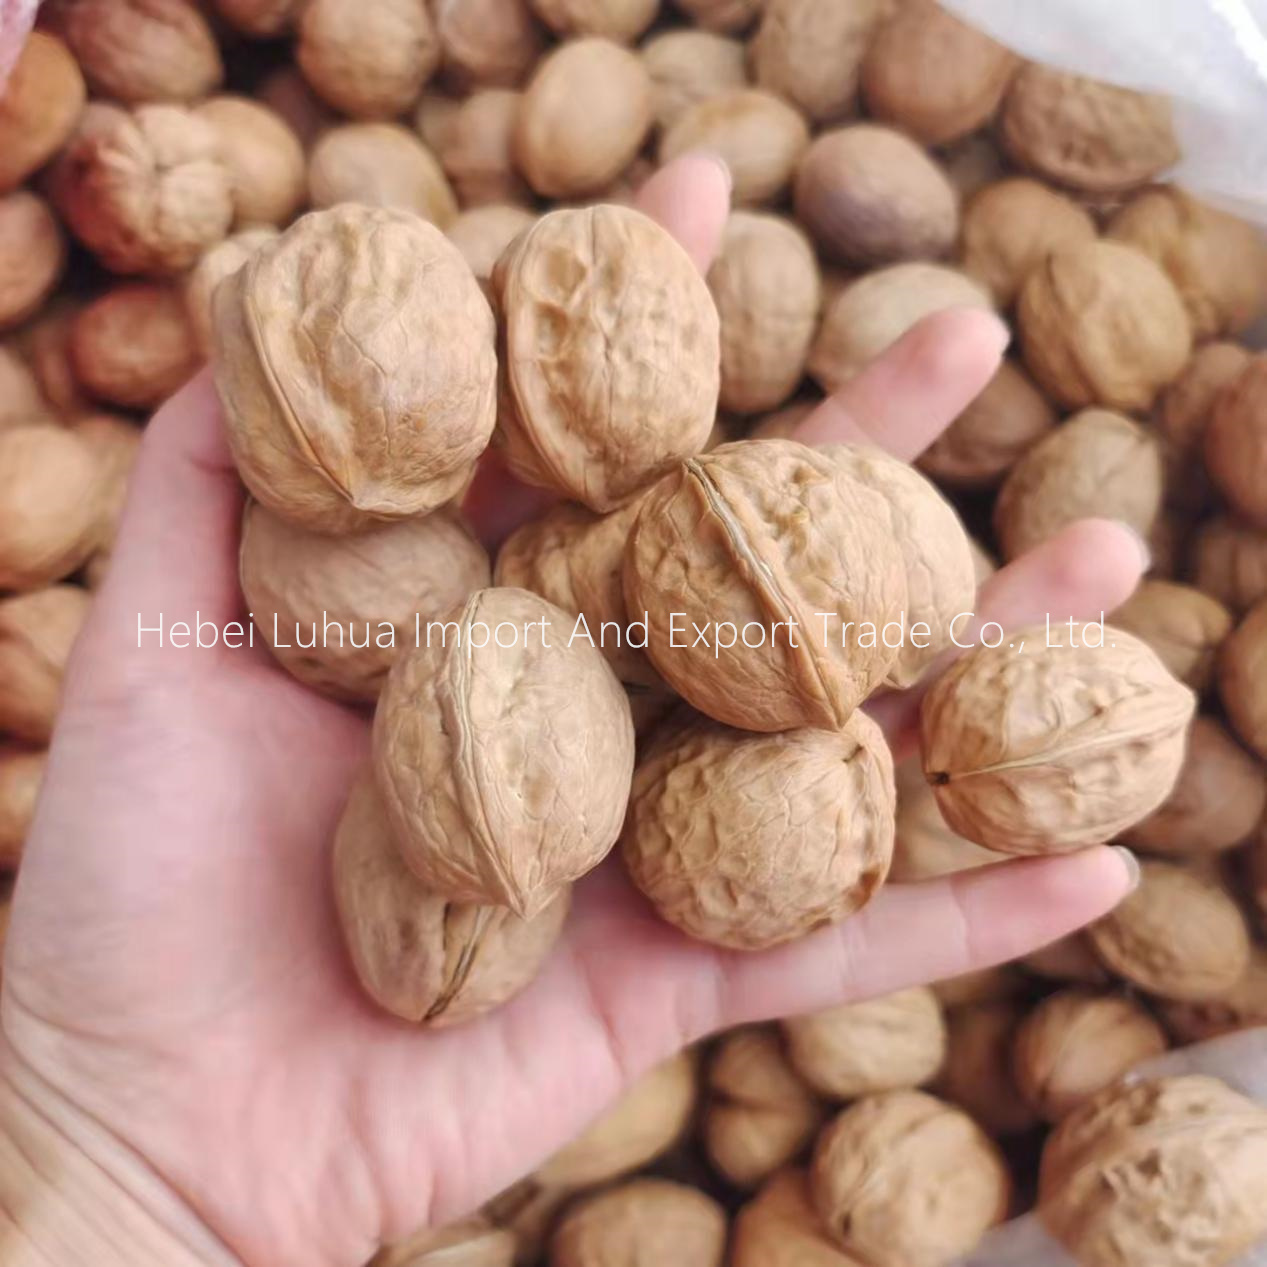 Xinjiang walnut xinfeng type walnuts in shell